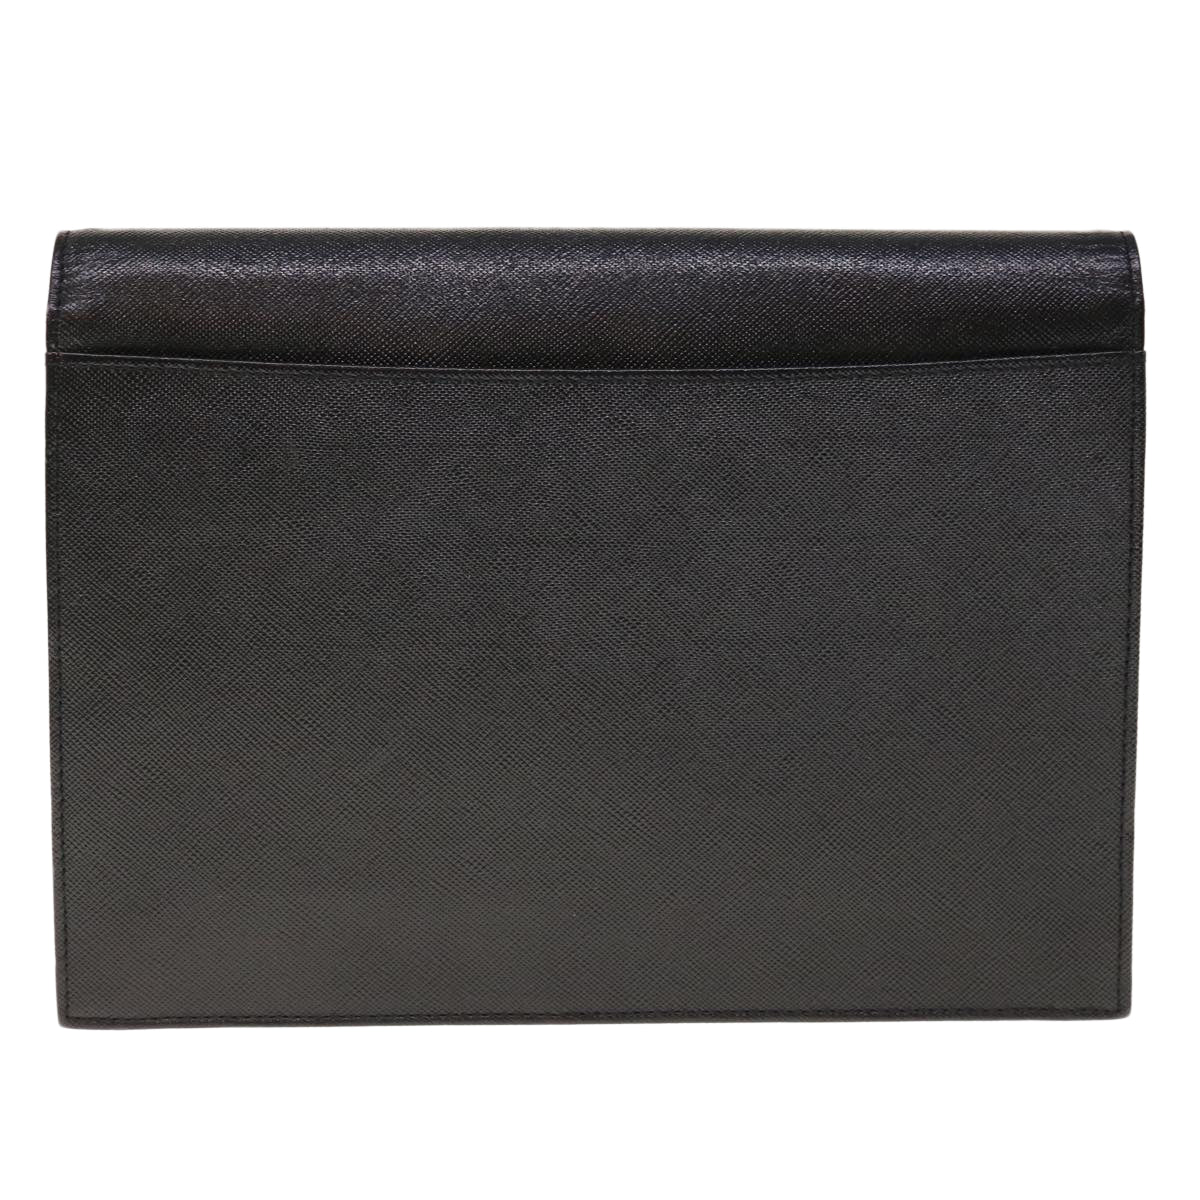 SAINT LAURENT Clutch Bag Leather Black Auth yk10564 - 0